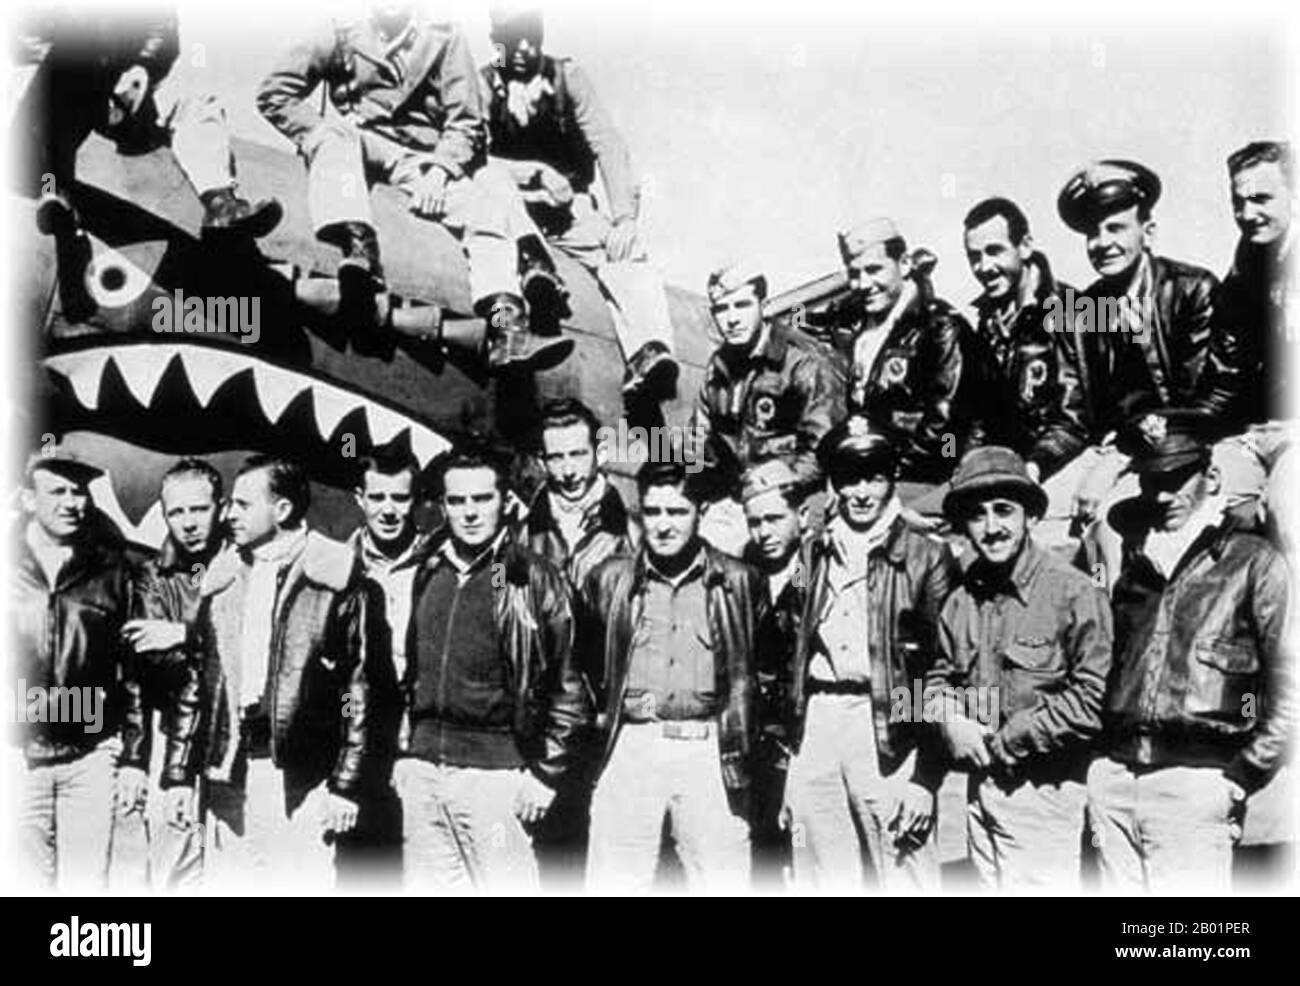 China/EE.UU.: Un grupo de 'Tigres Voladores' con sede en el aeropuerto Kunming Wujiaba, Yunnan, China, c. 1942-1944. "Tigres voladores" fue el nombre popular para el 1er Grupo de Voluntarios Americanos (AVG) de la Fuerza Aérea China en 1941-1942. Los pilotos eran personal del Ejército de los Estados Unidos (USAAF), la Marina (USN) y el Cuerpo de Marines (USMC), reclutados bajo sanción presidencial y comandados por Claire Lee Chennault; la tripulación de tierra y el personal del cuartel general también fueron reclutados en su mayoría por el ejército de los Estados Unidos, junto con algunos civiles. El grupo estaba formado por tres escuadrones de cazas con unos 20 aviones cada uno. Foto de stock